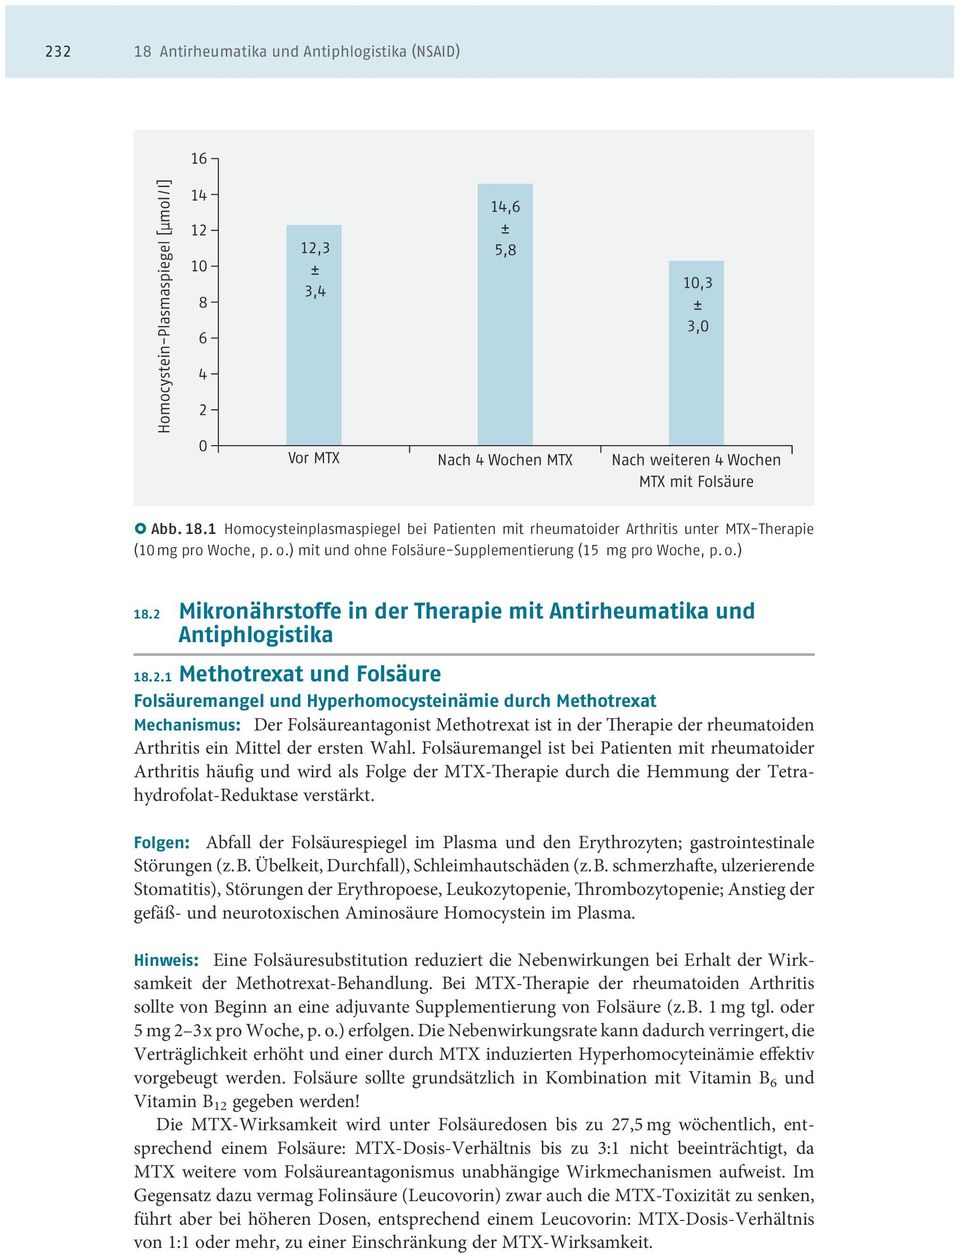 Mikronährstoffe in der Therapie mit Antirheumatika und Antiphlogistika 18.2.